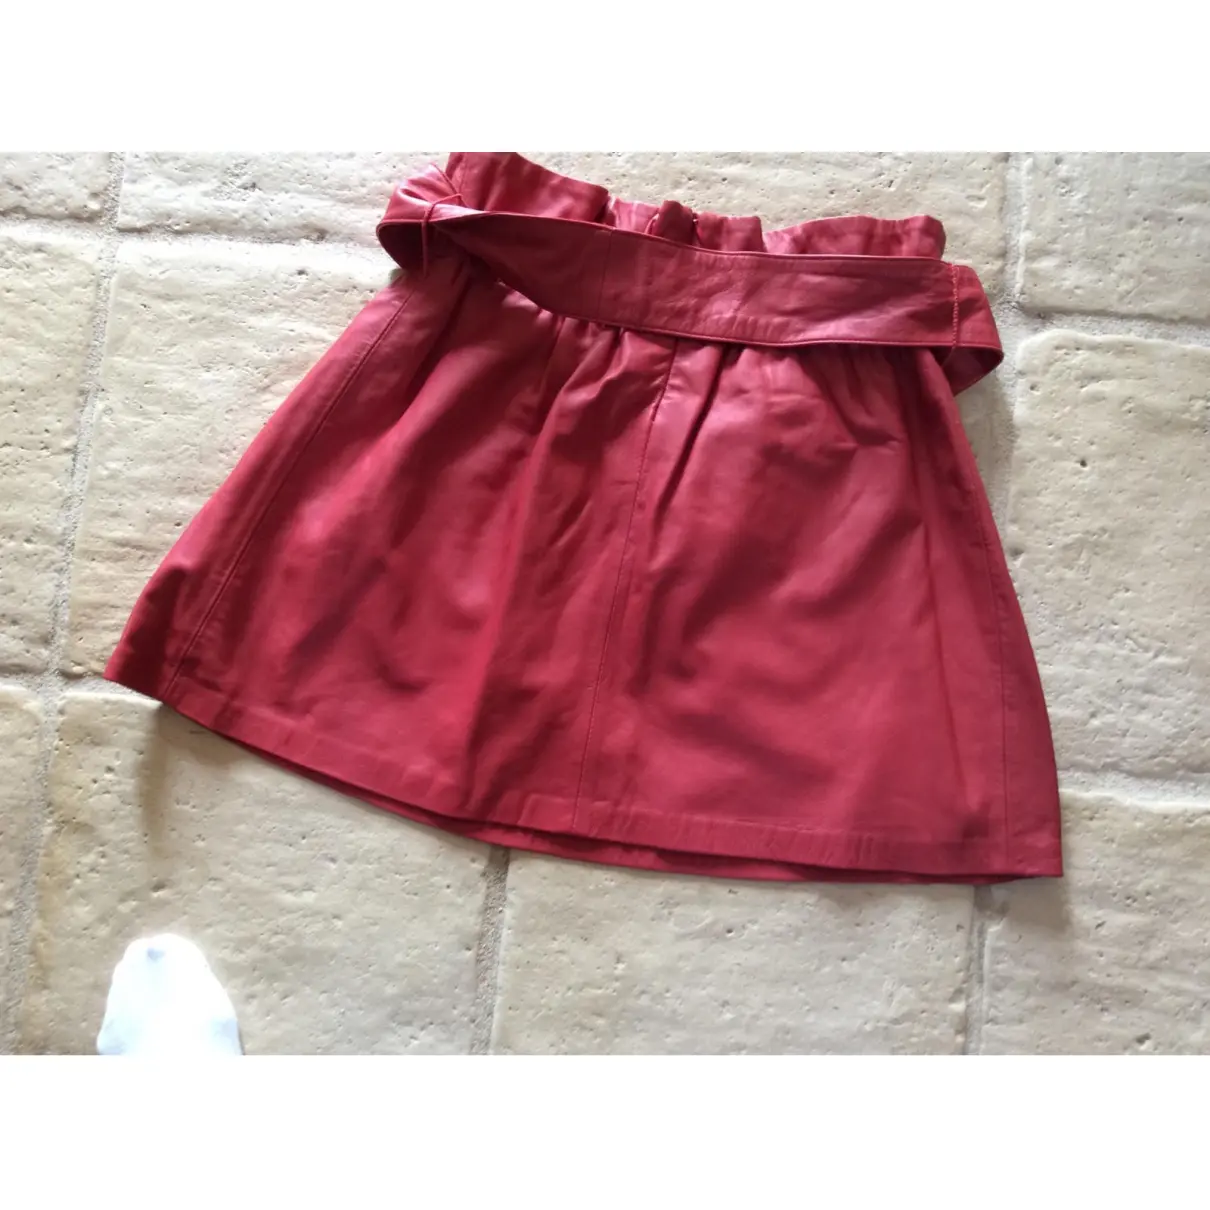 Buy Bel Air Orange Leather Skirt online